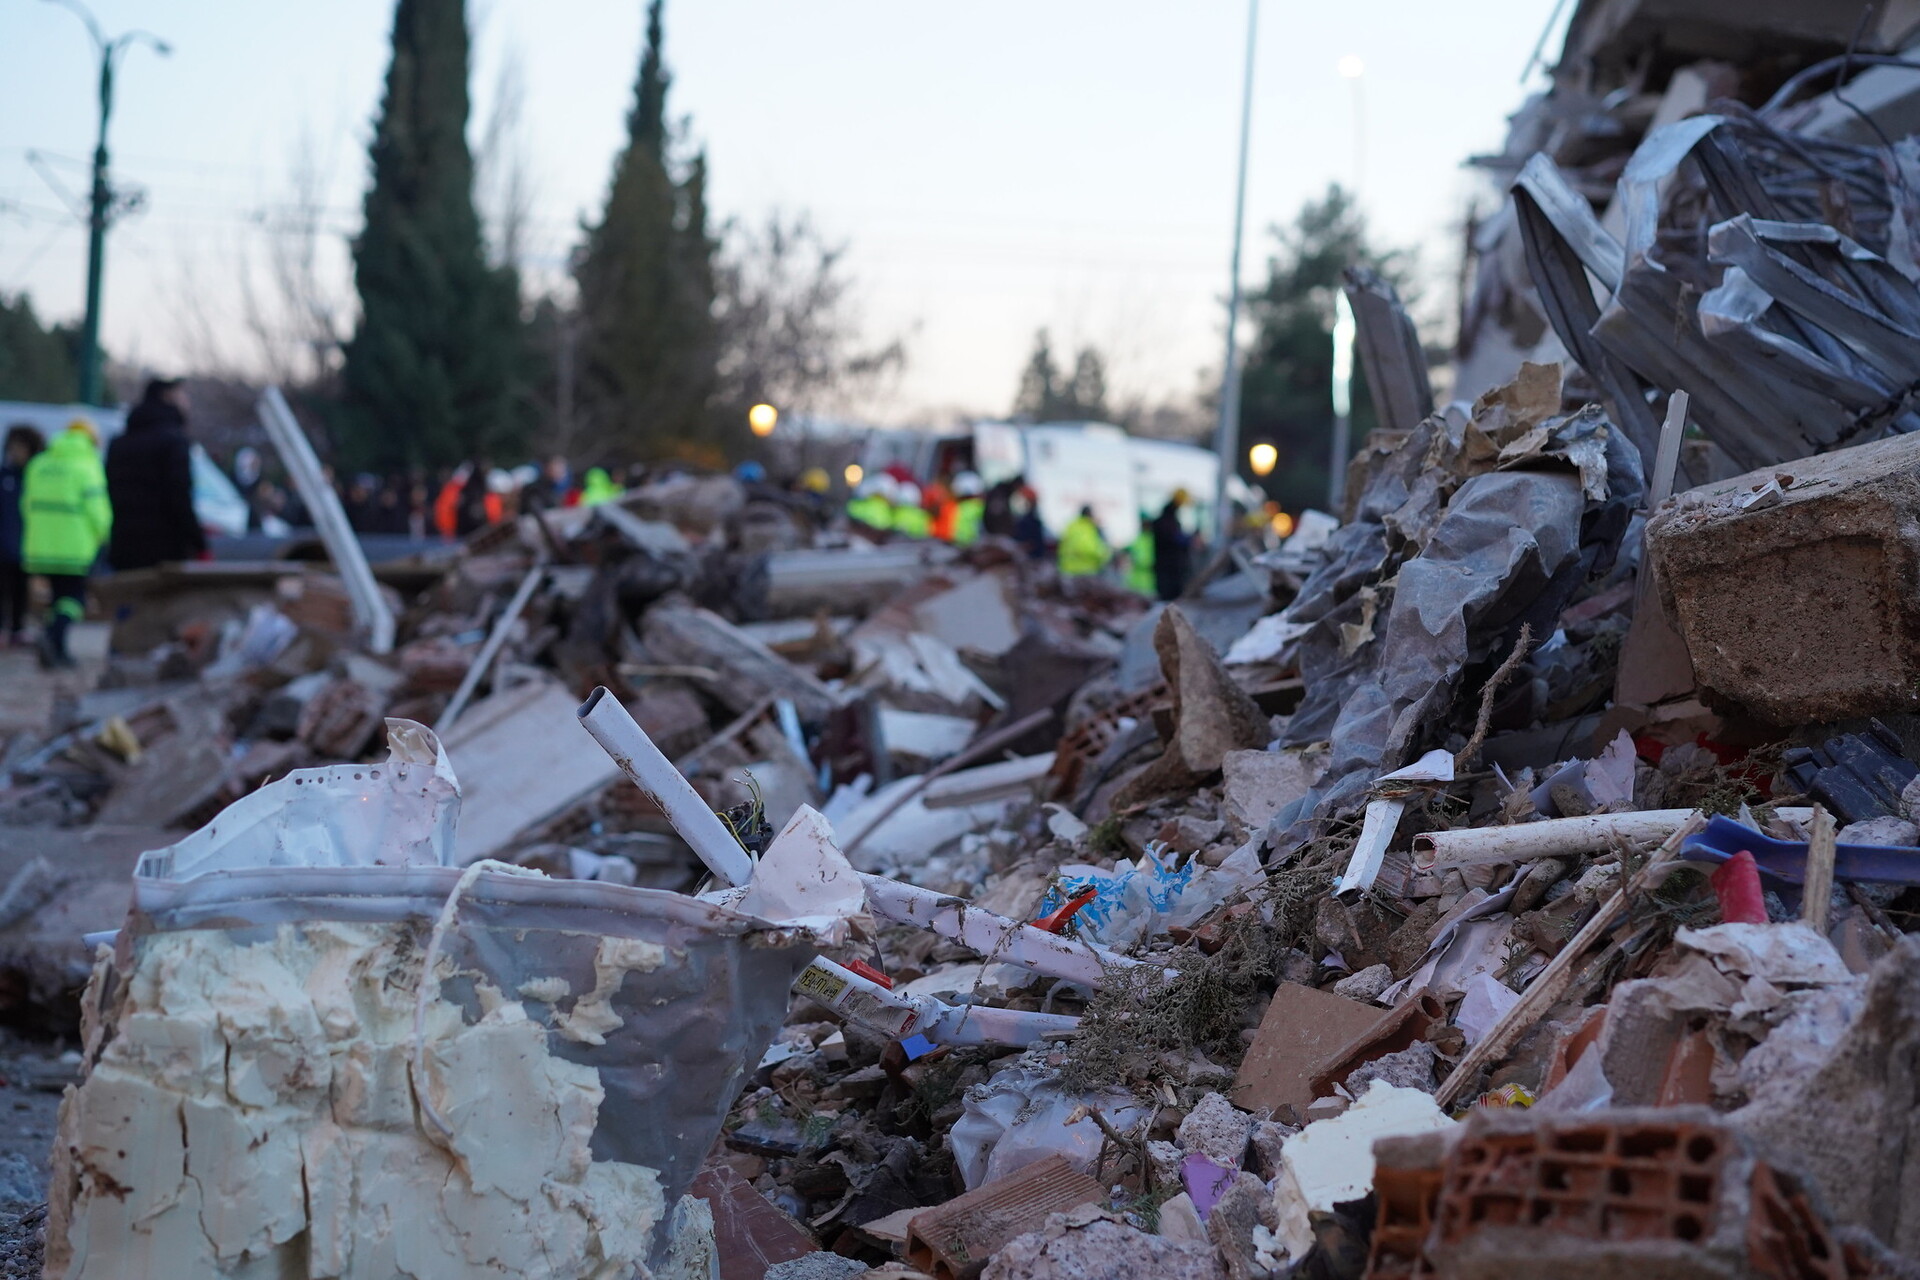 Трёх человек нашли живыми под завалами в Турции. Спустя почти 2 недели после землетрясения